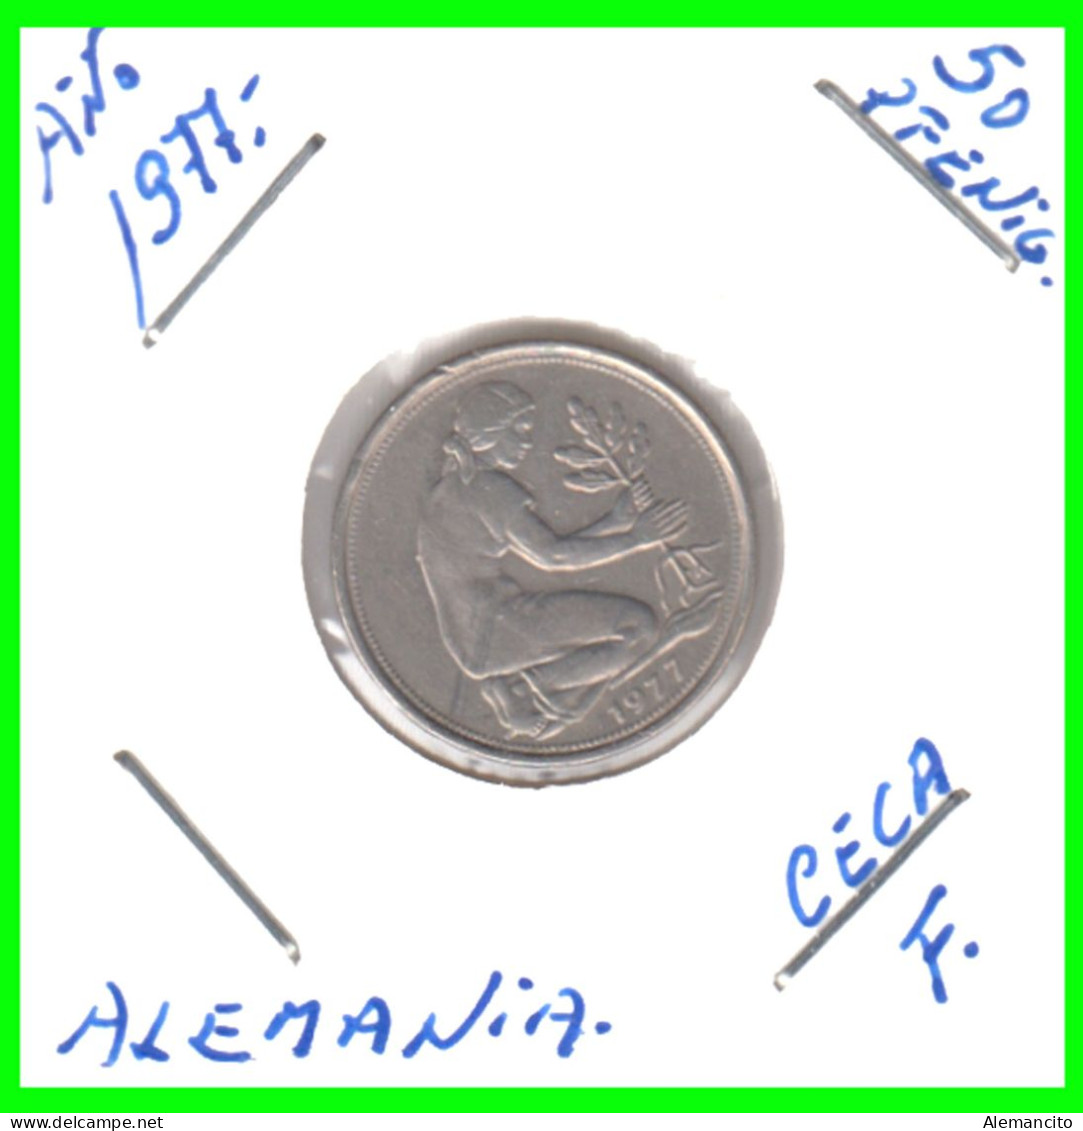 ALEMANIA -DEUTSCHLAND - GERMANY-MONEDA DE LA REPUBLICA FEDERAL DE ALEMANIA DE 50 Pfn-DEL AÑO - 1977 - CECA - J - HAMBURG - 50 Pfennig